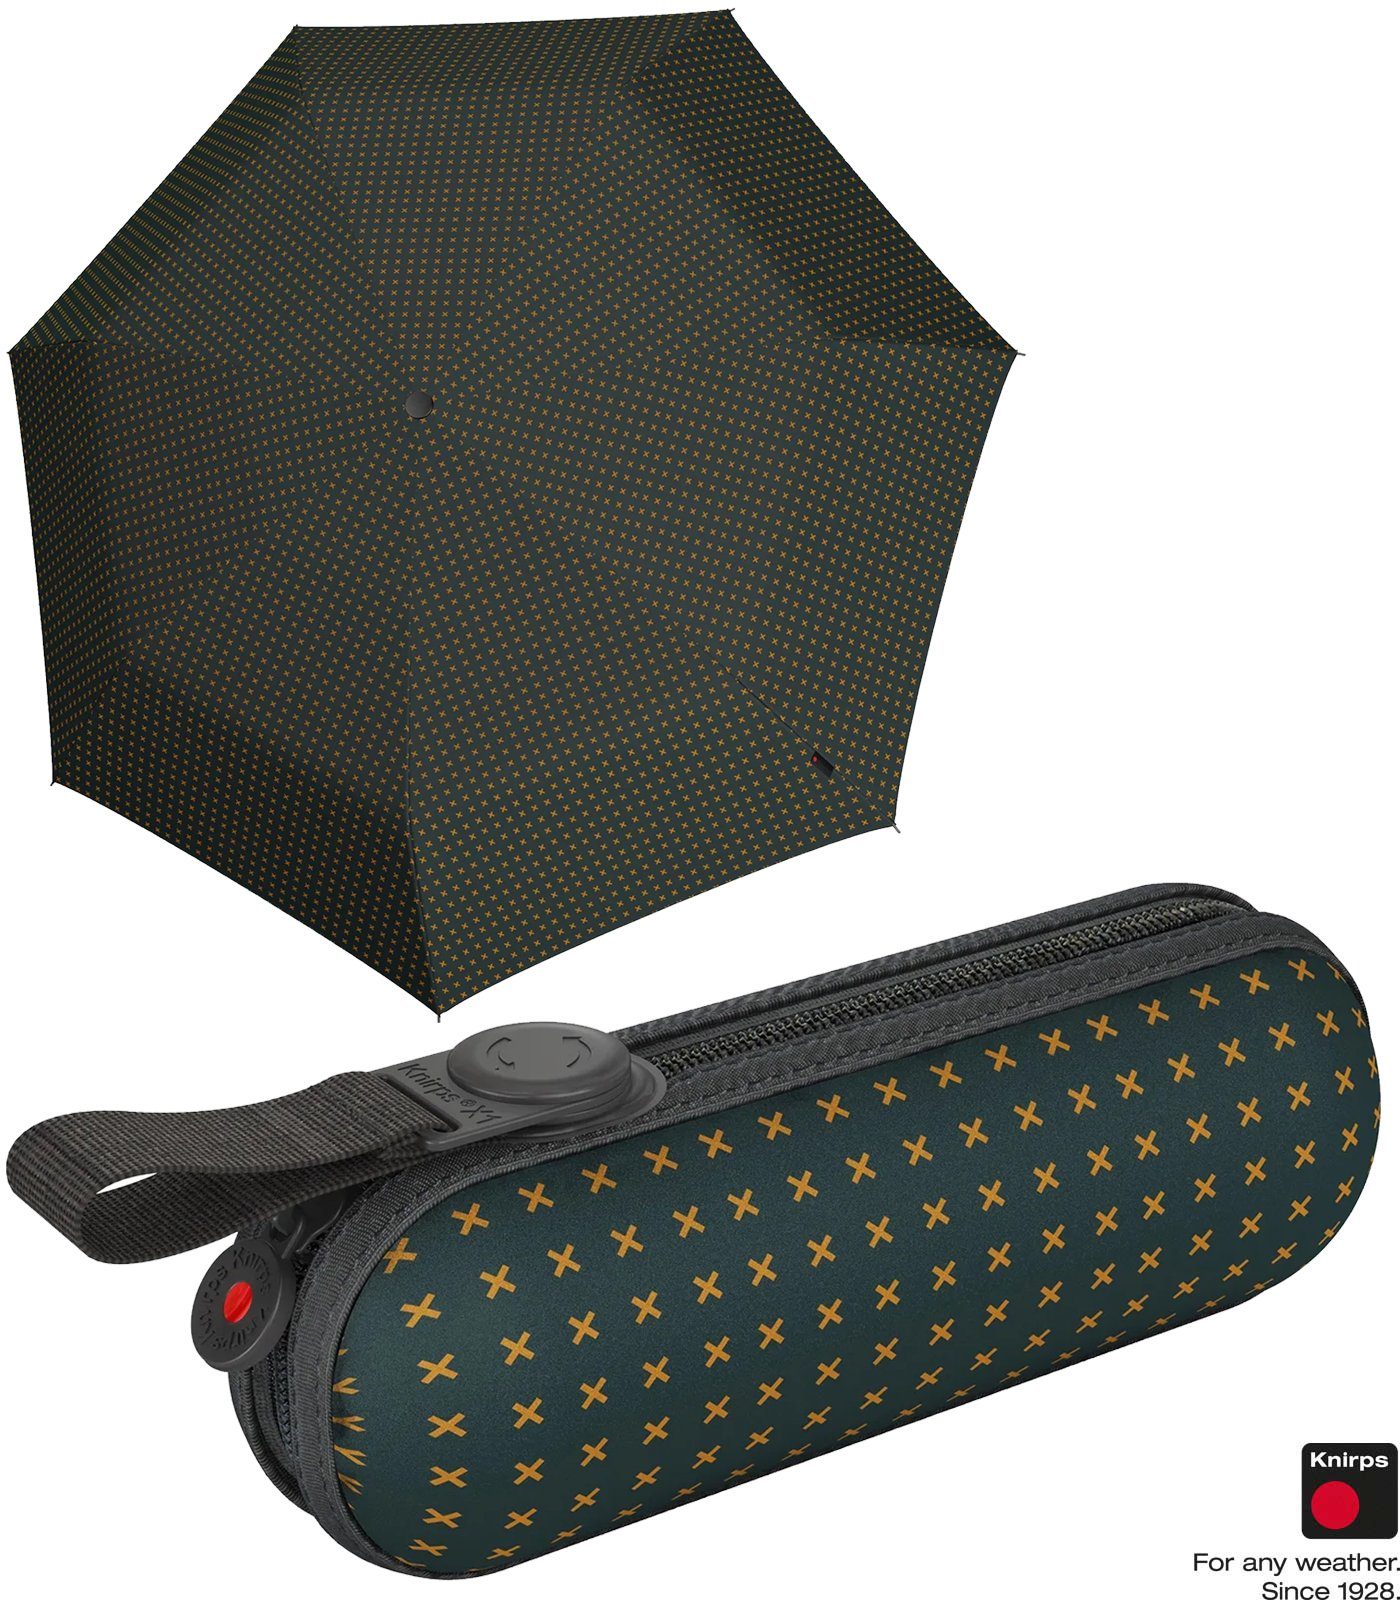 Knirps® Taschenregenschirm X1 Super Mini mit ecorepel-Technologie - 2Cross, der kleine, leichte, kompakte Begleiter grün